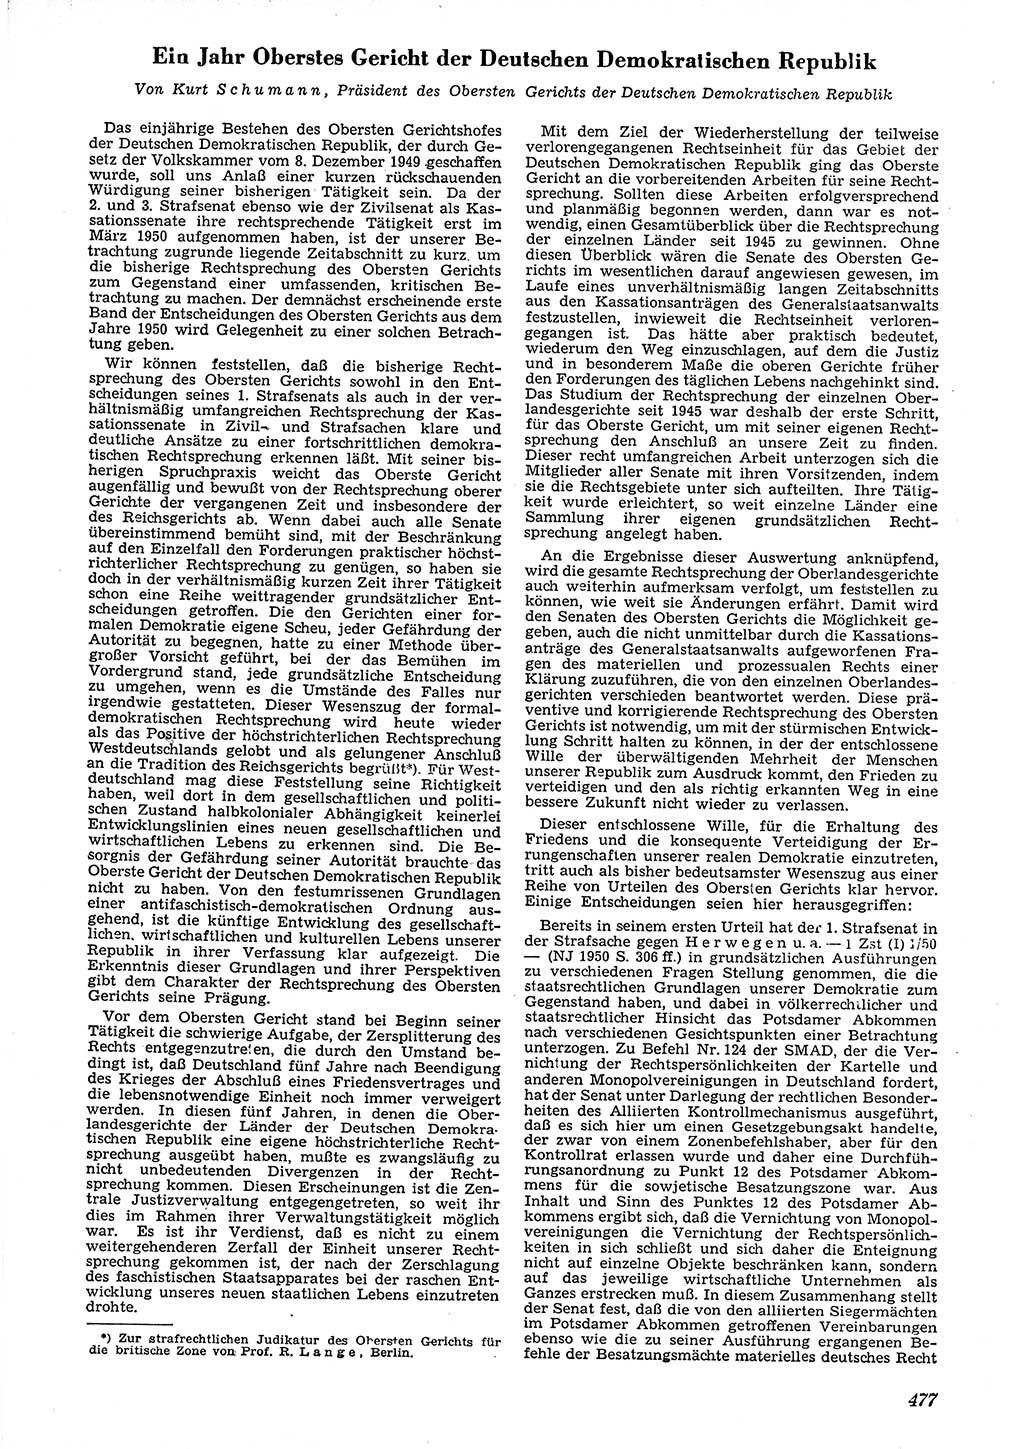 Neue Justiz (NJ), Zeitschrift für Recht und Rechtswissenschaft [Deutsche Demokratische Republik (DDR)], 4. Jahrgang 1950, Seite 477 (NJ DDR 1950, S. 477)